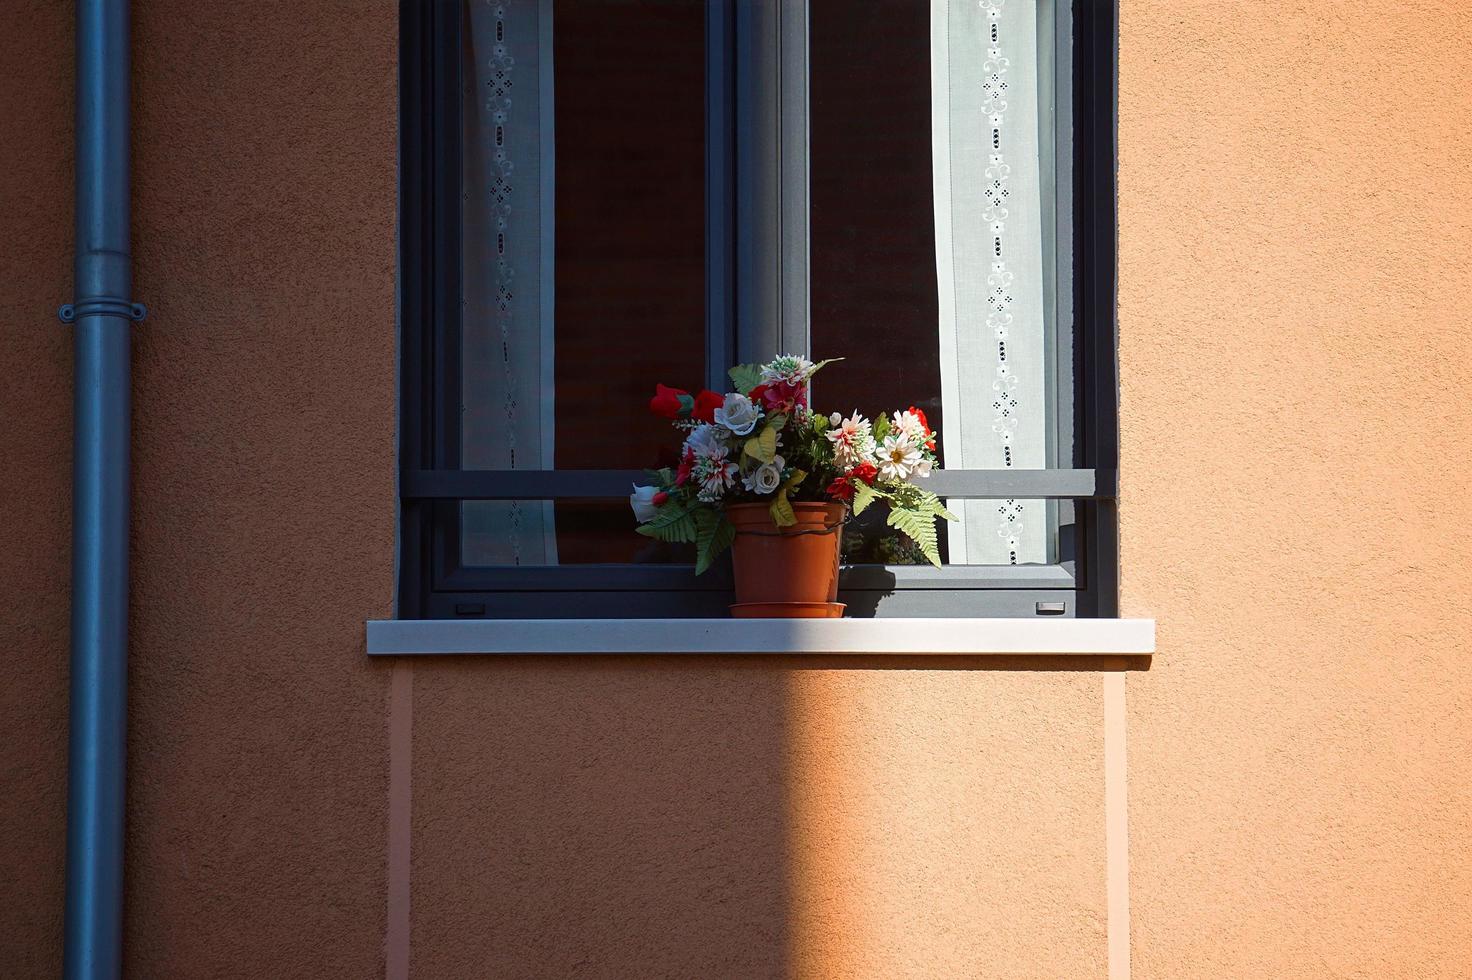 fenêtre sur la façade orange de la maison photo